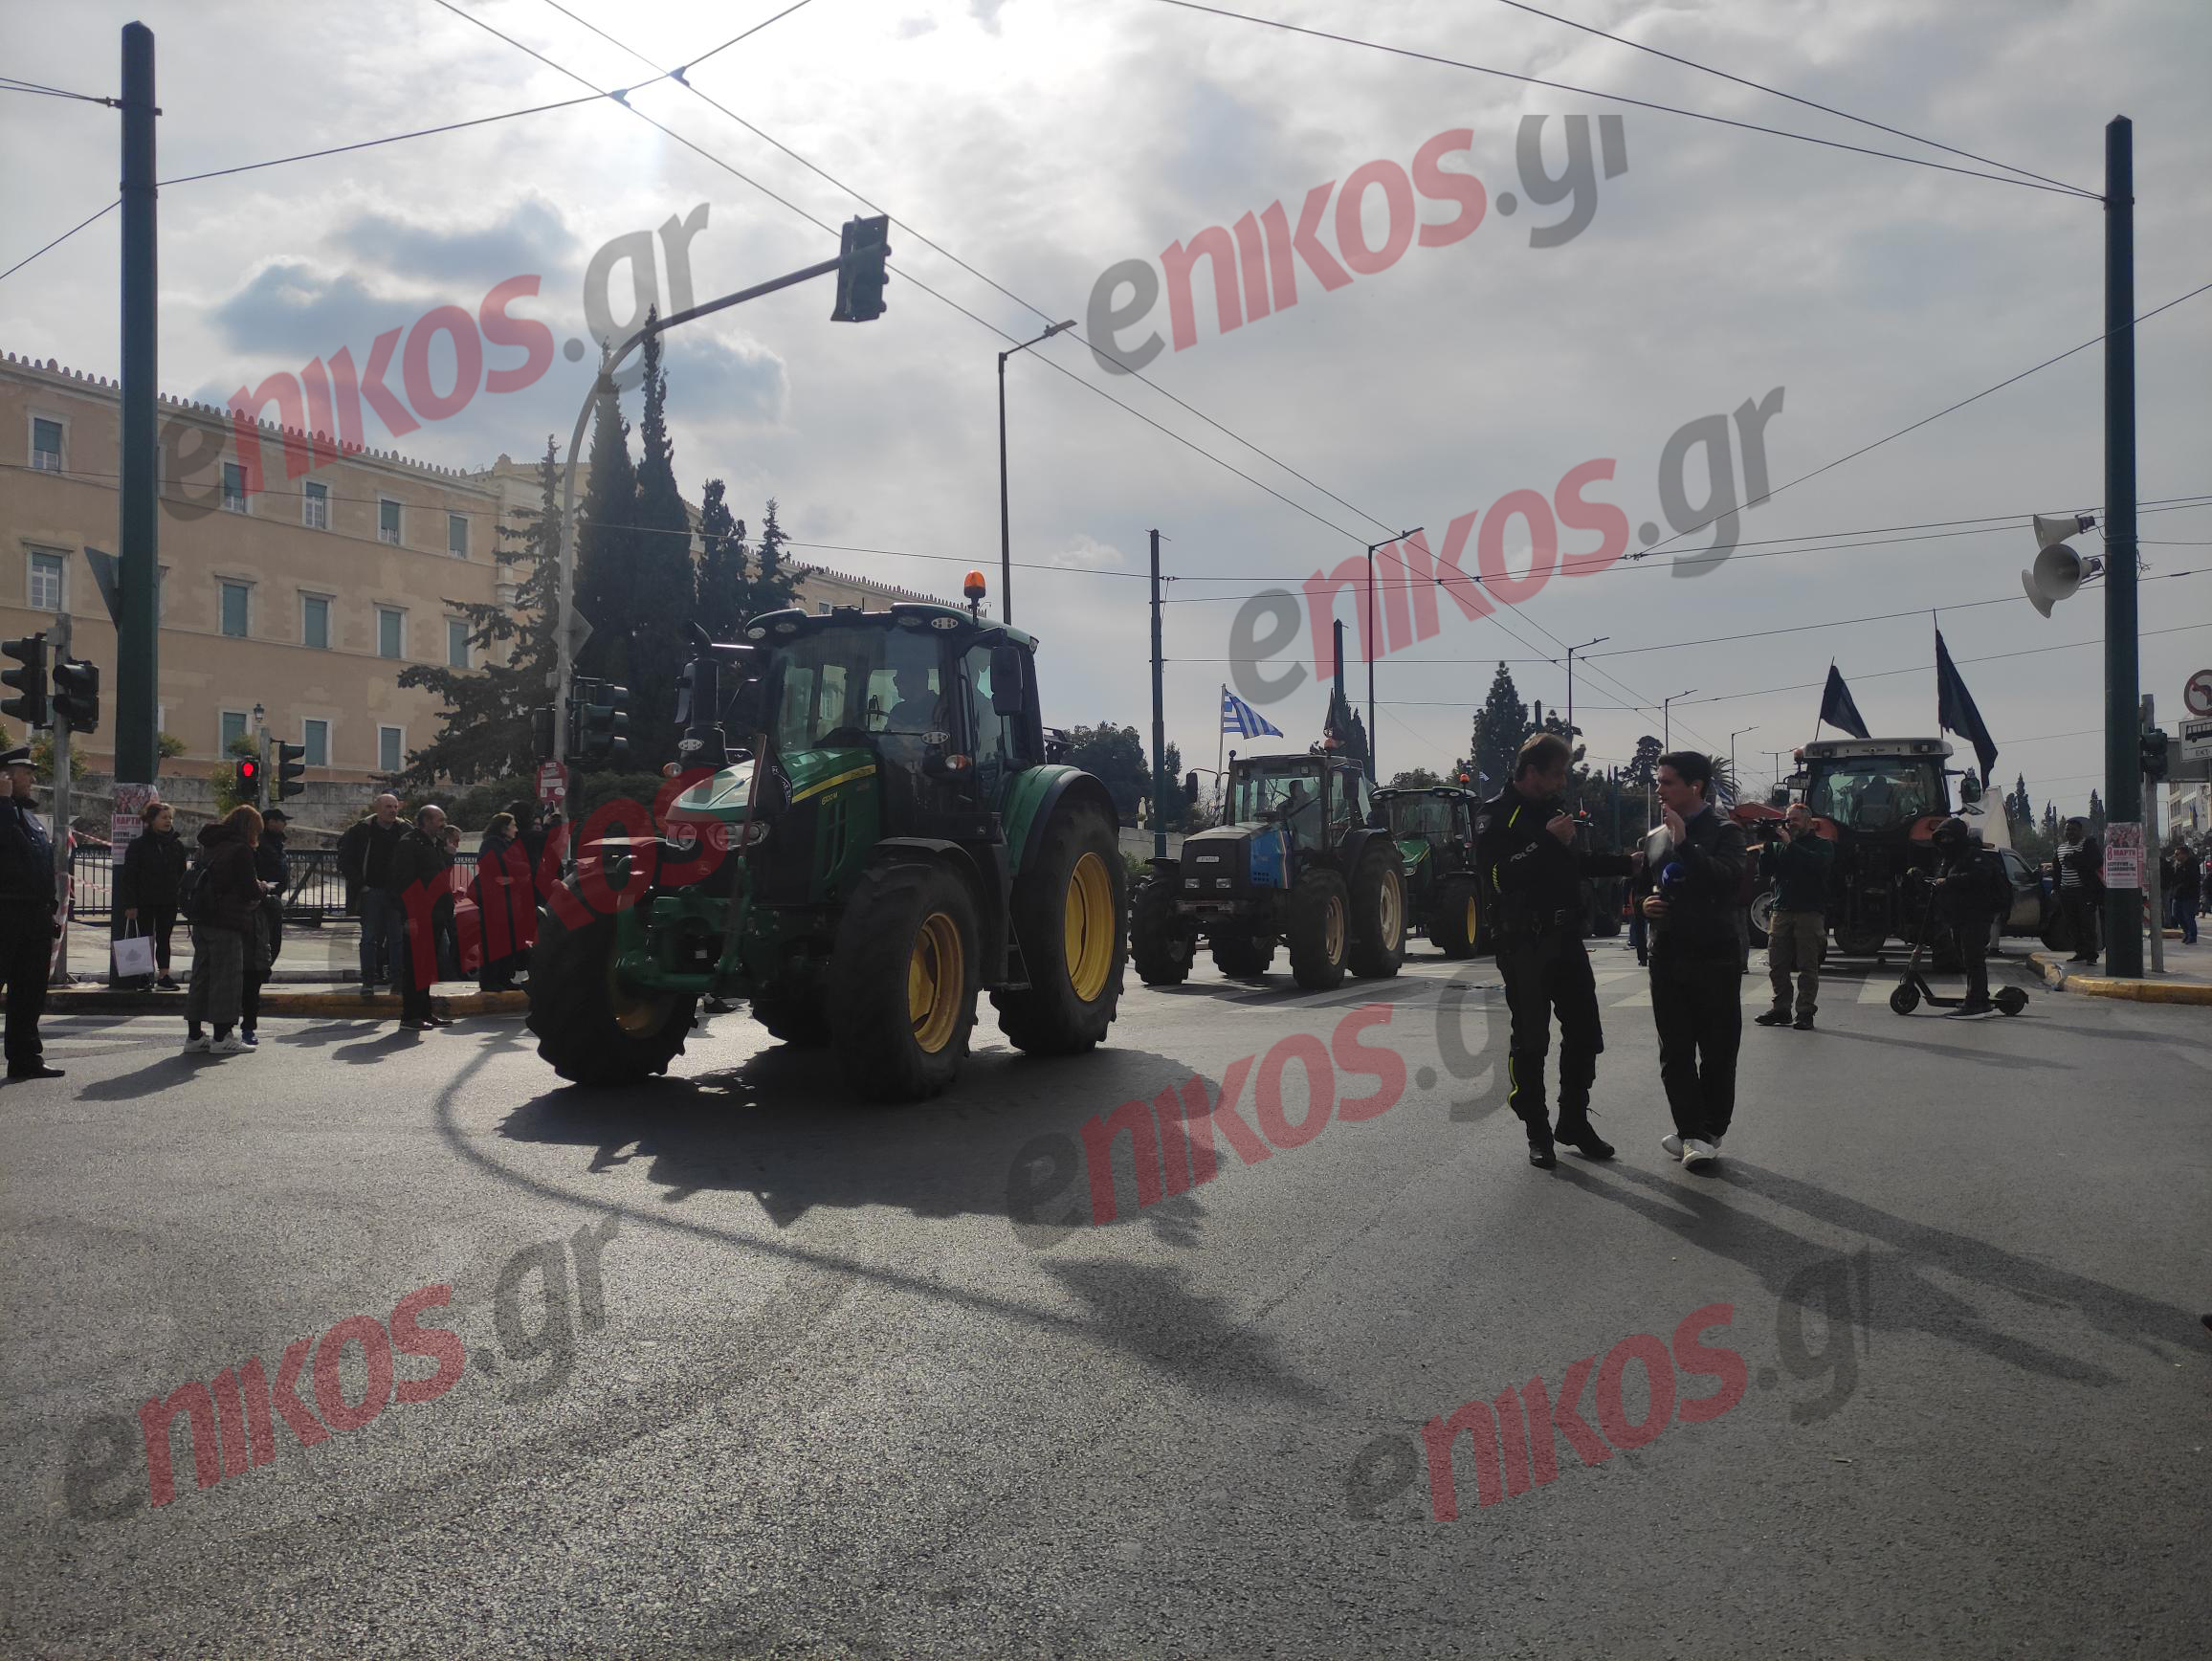 αναχωρούν οι αγρότες από το σύνταγμα εν μέσω χειροκροτημάτων – «φεύγουμε με δάκρυα χαράς» λένε στο enikos.gr